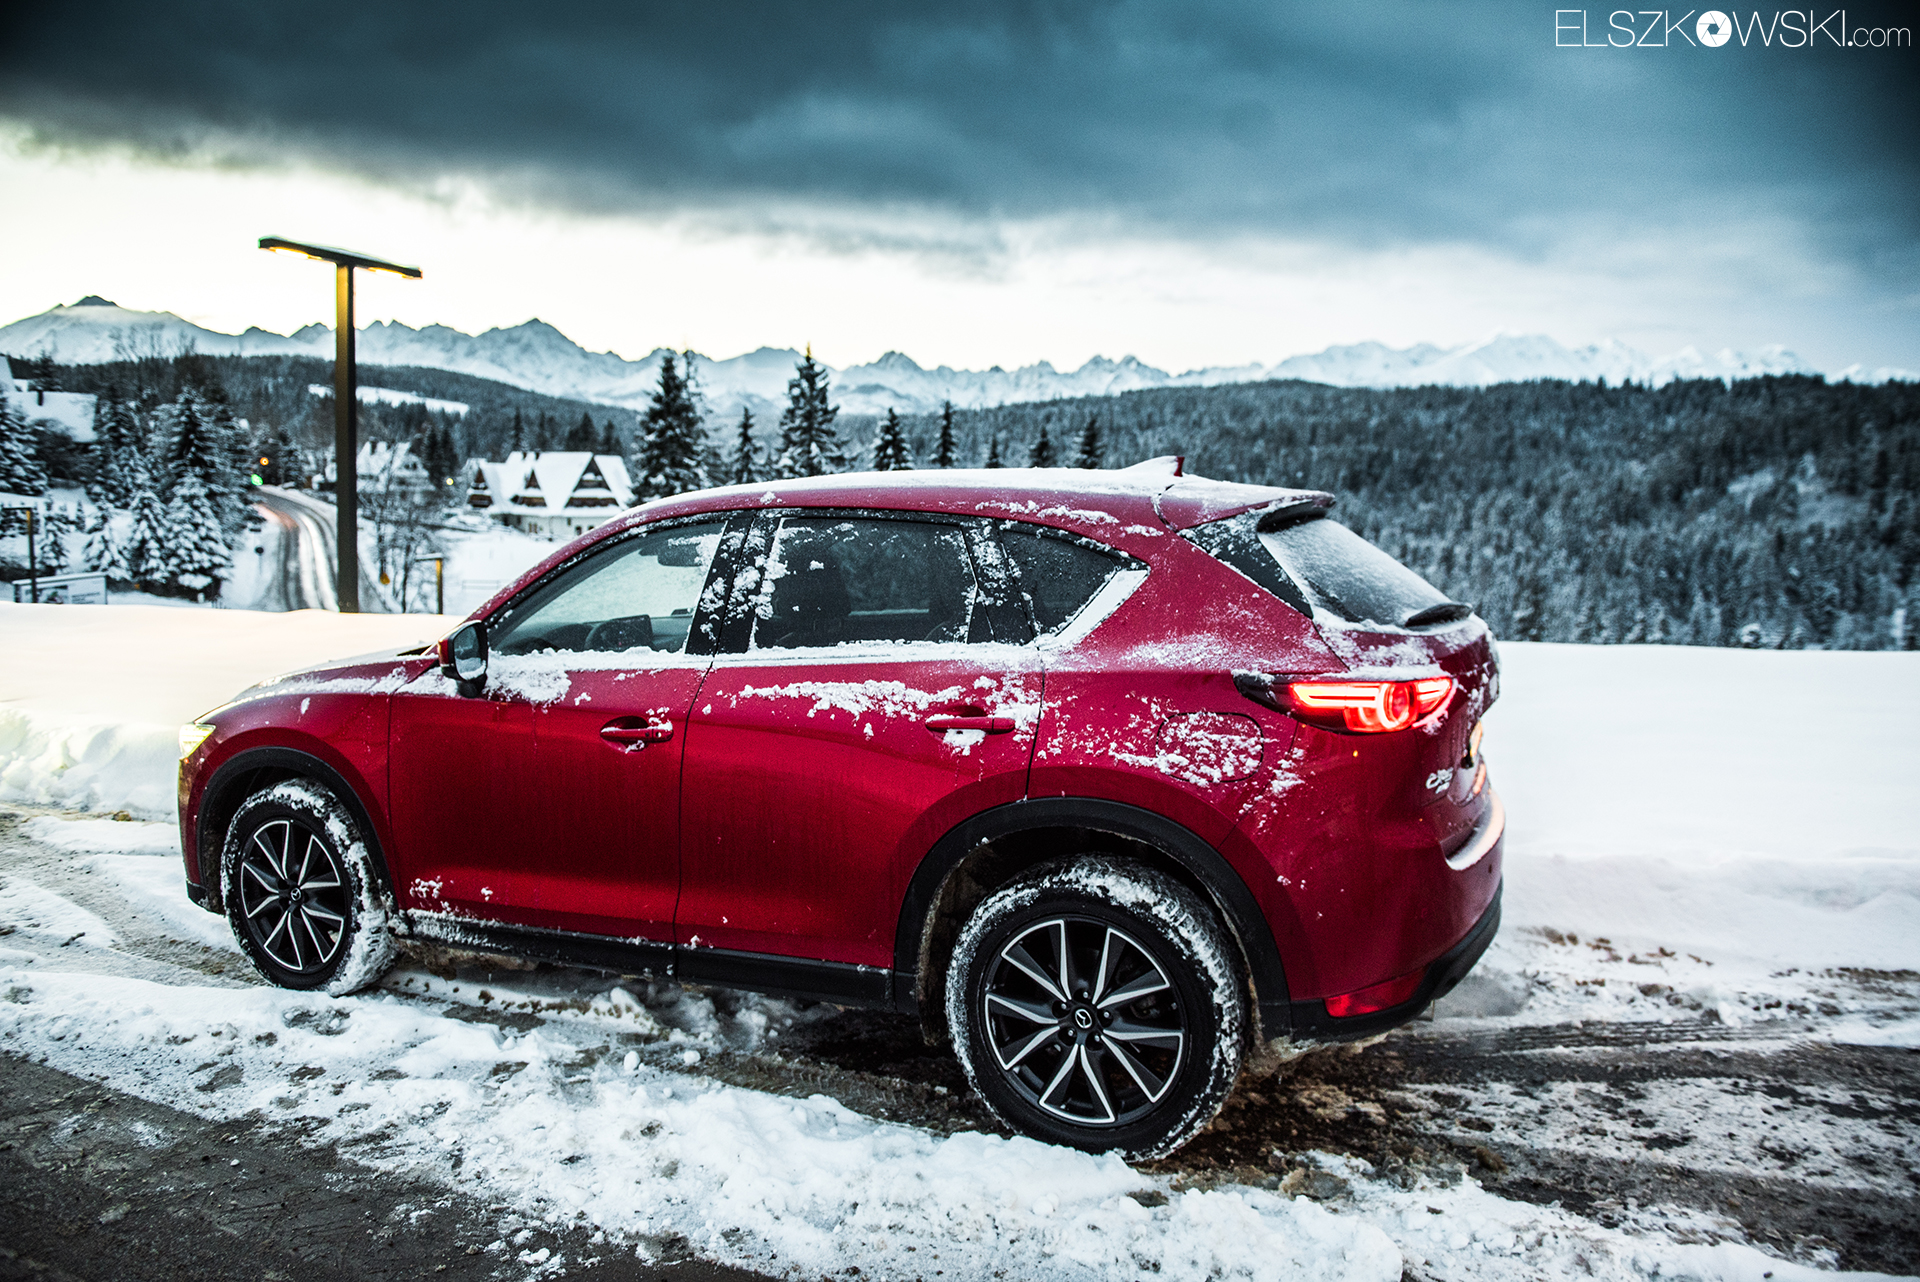 Jak Mazda CX5 radzi sobie zimą w górach? motofilm.pl